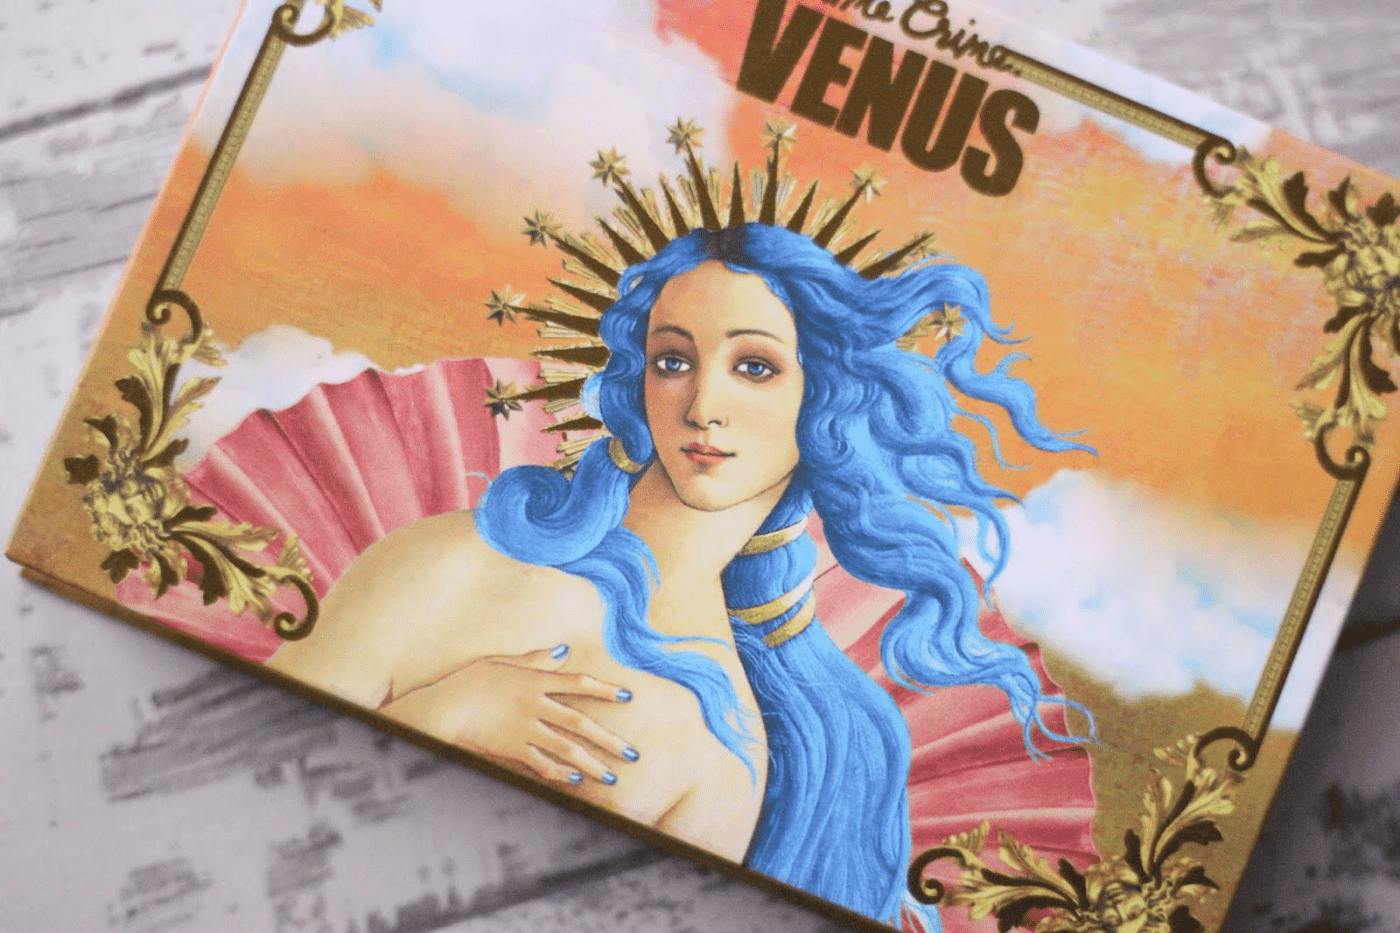 Paleta Vênus – Lime Crime